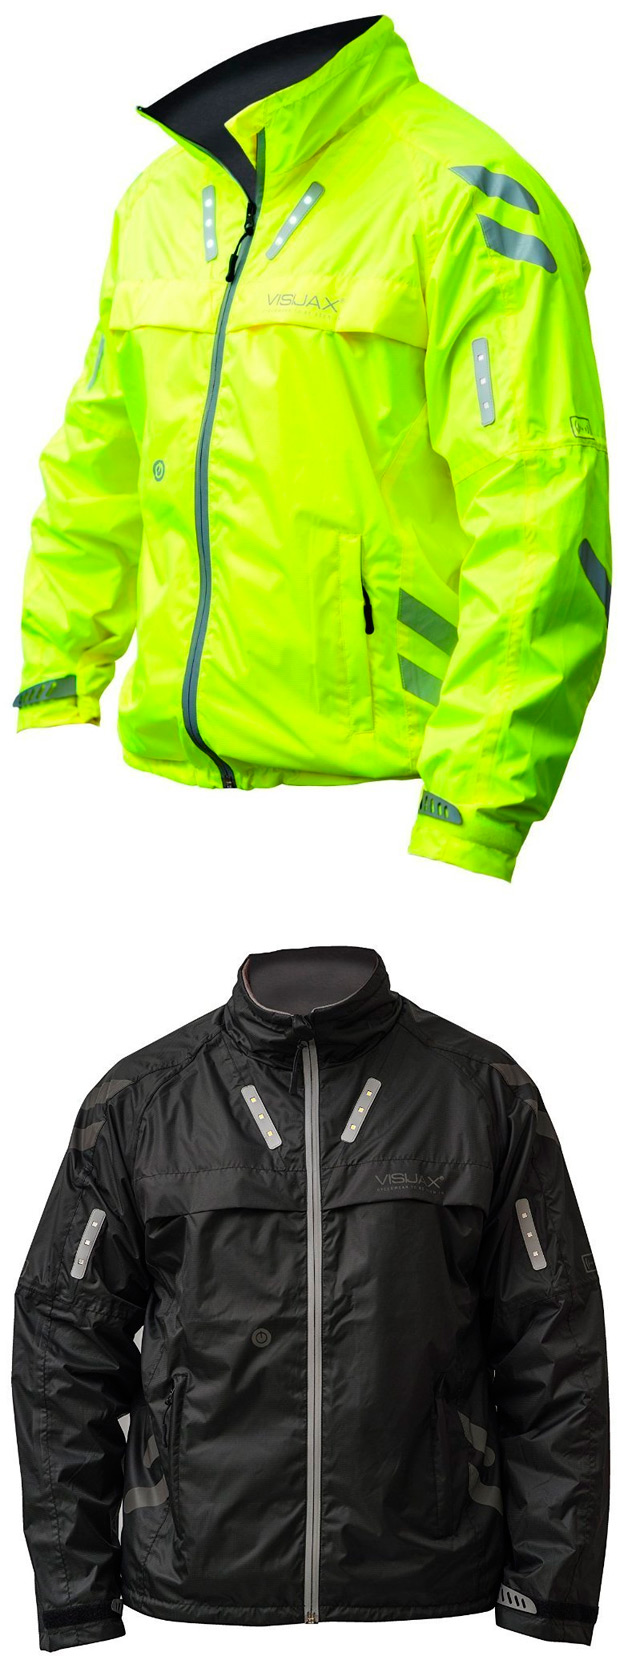 Visijax Commuter, una chaqueta de alta visibilidad con iluminación integrada para ciclistas